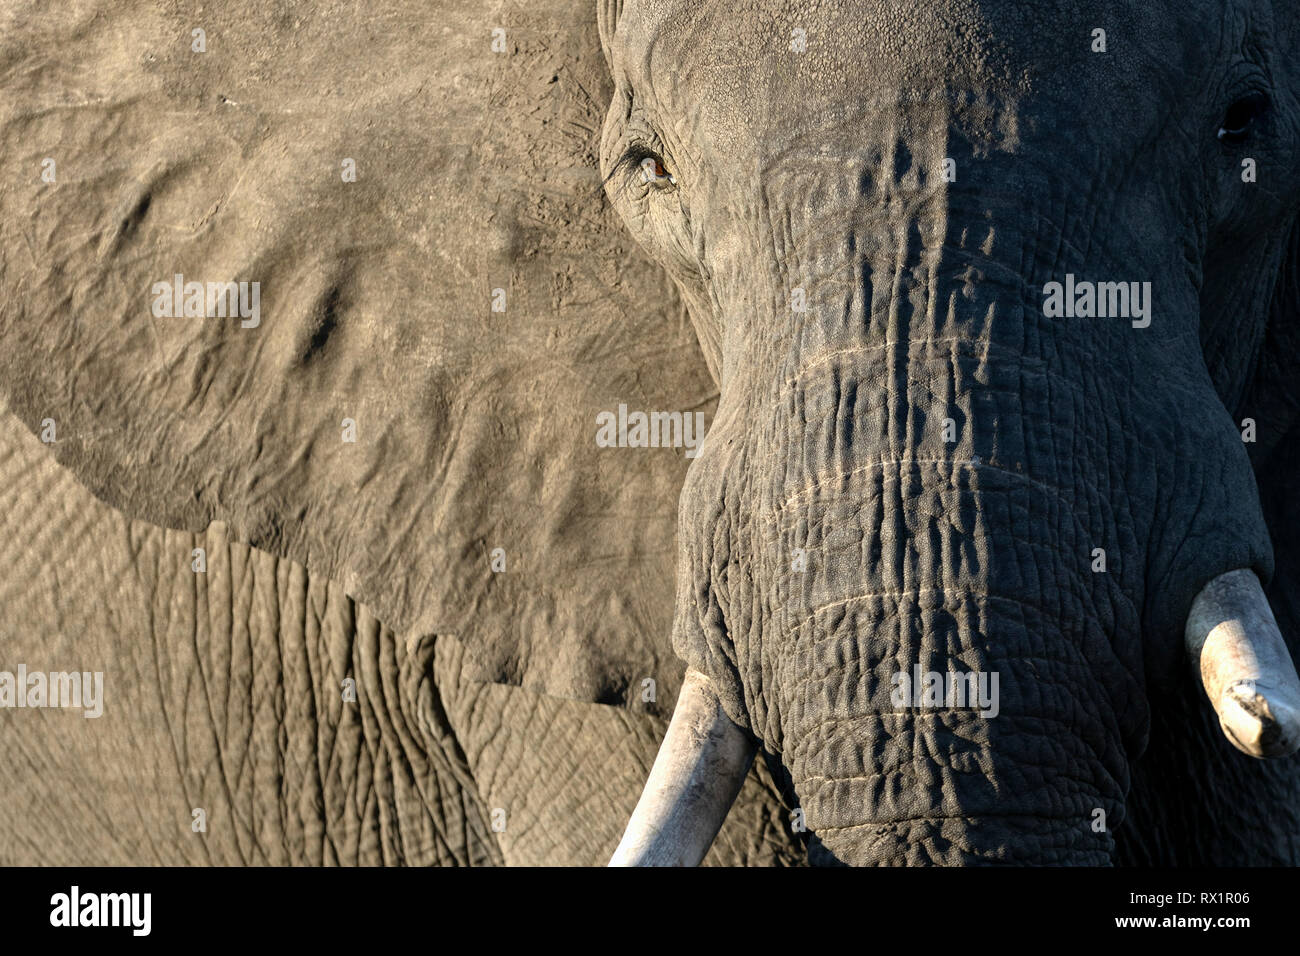 Il close up dettagli di un elefante di Bull nel Parco Nazionale Chobe del Botswana. Foto Stock